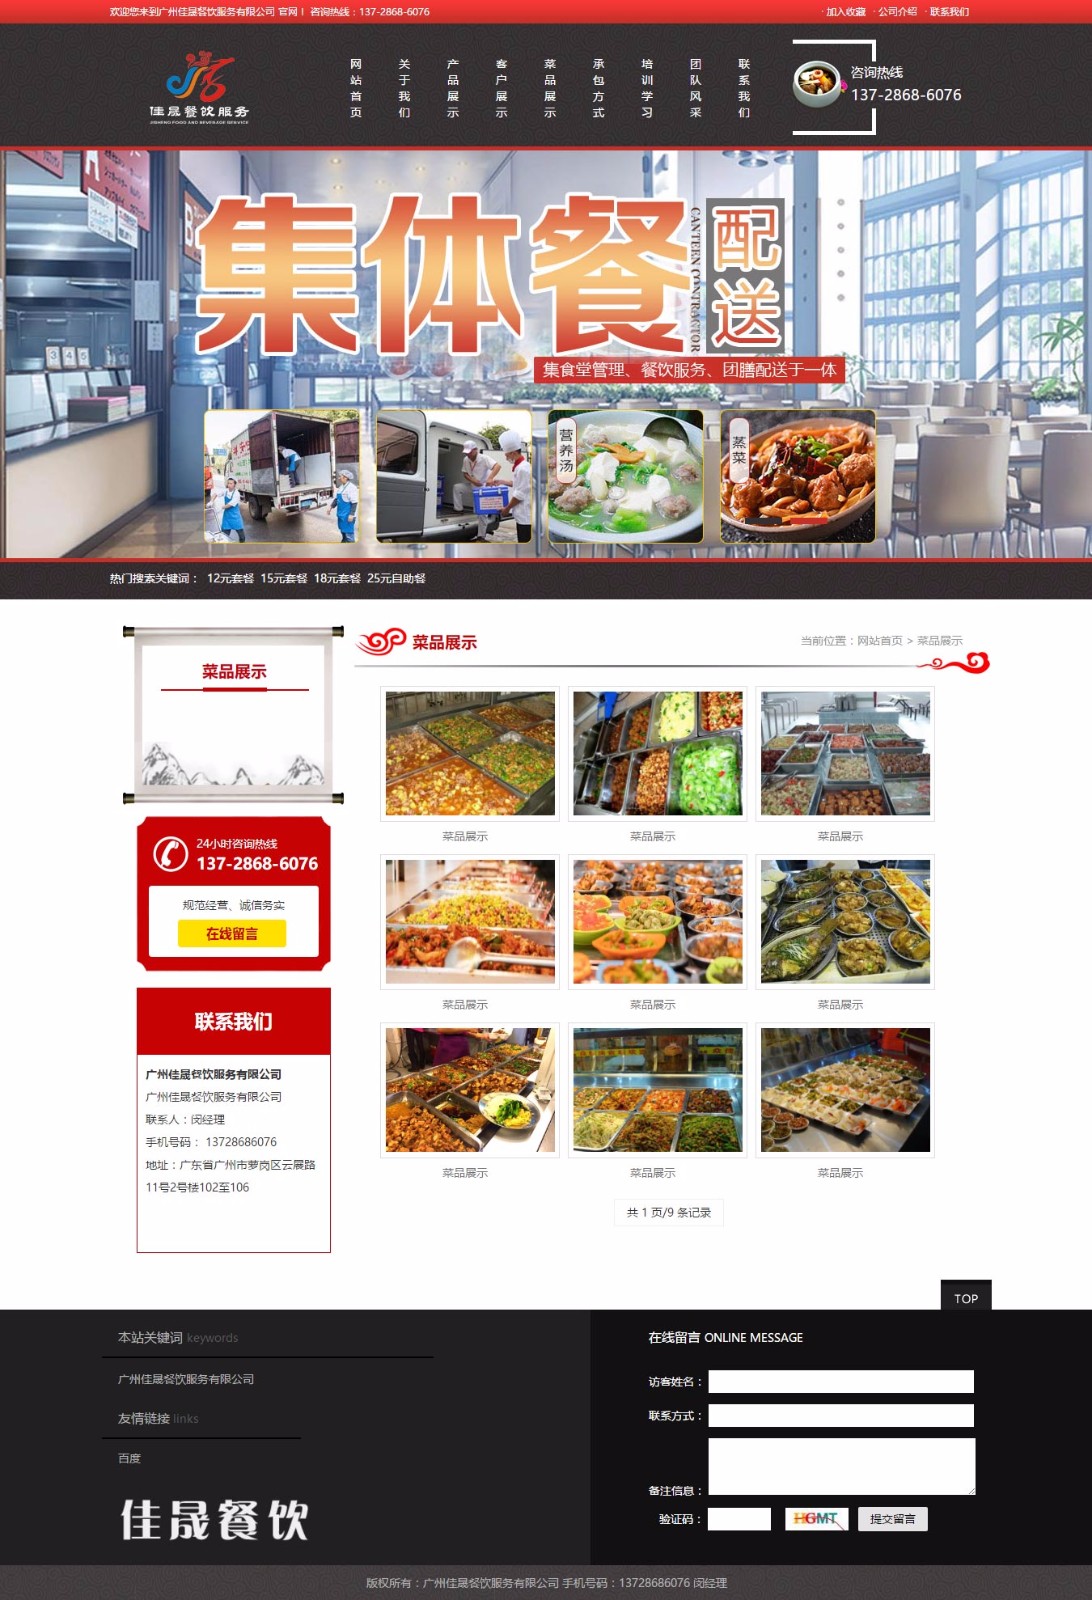 菜品展示_广州佳晟餐饮服务有限公司